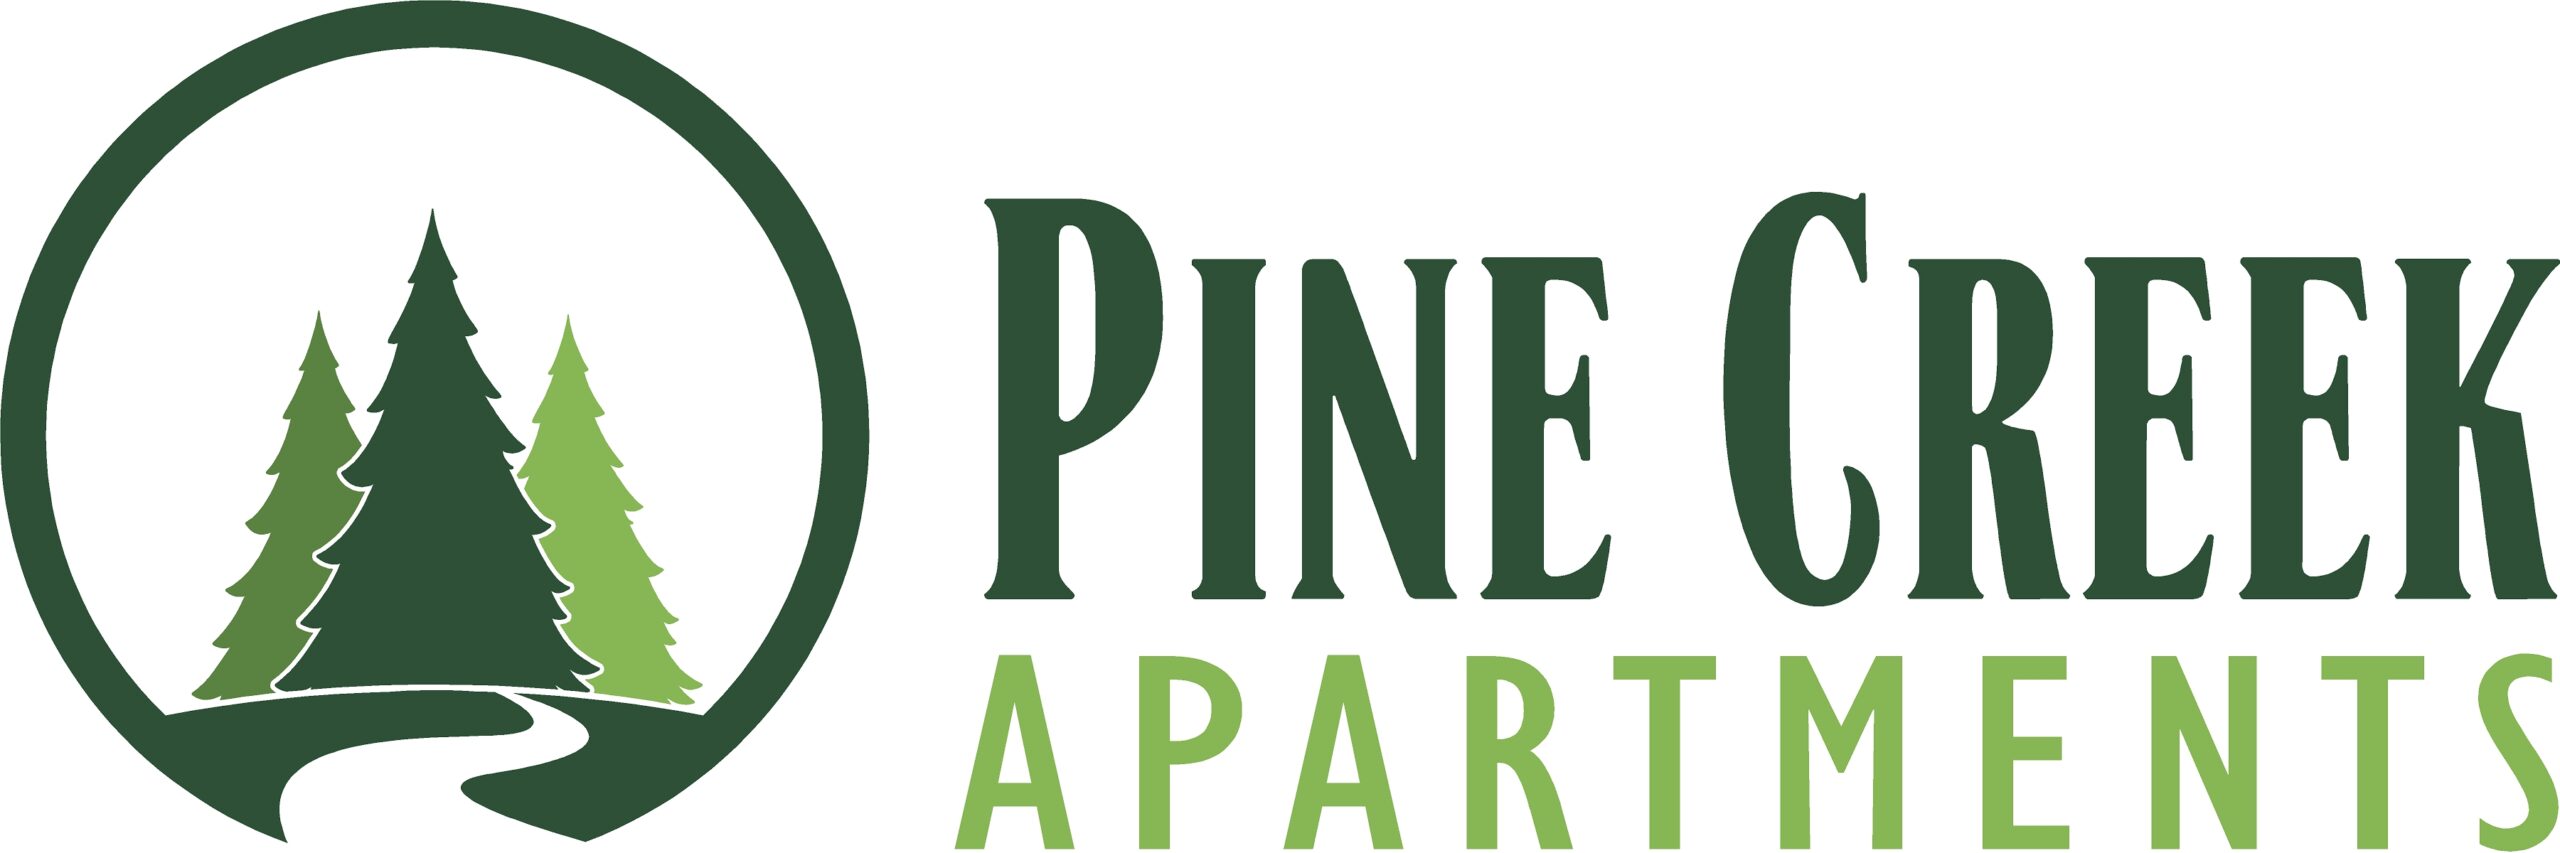 Pine Creek Apartments Wisconsin Dells